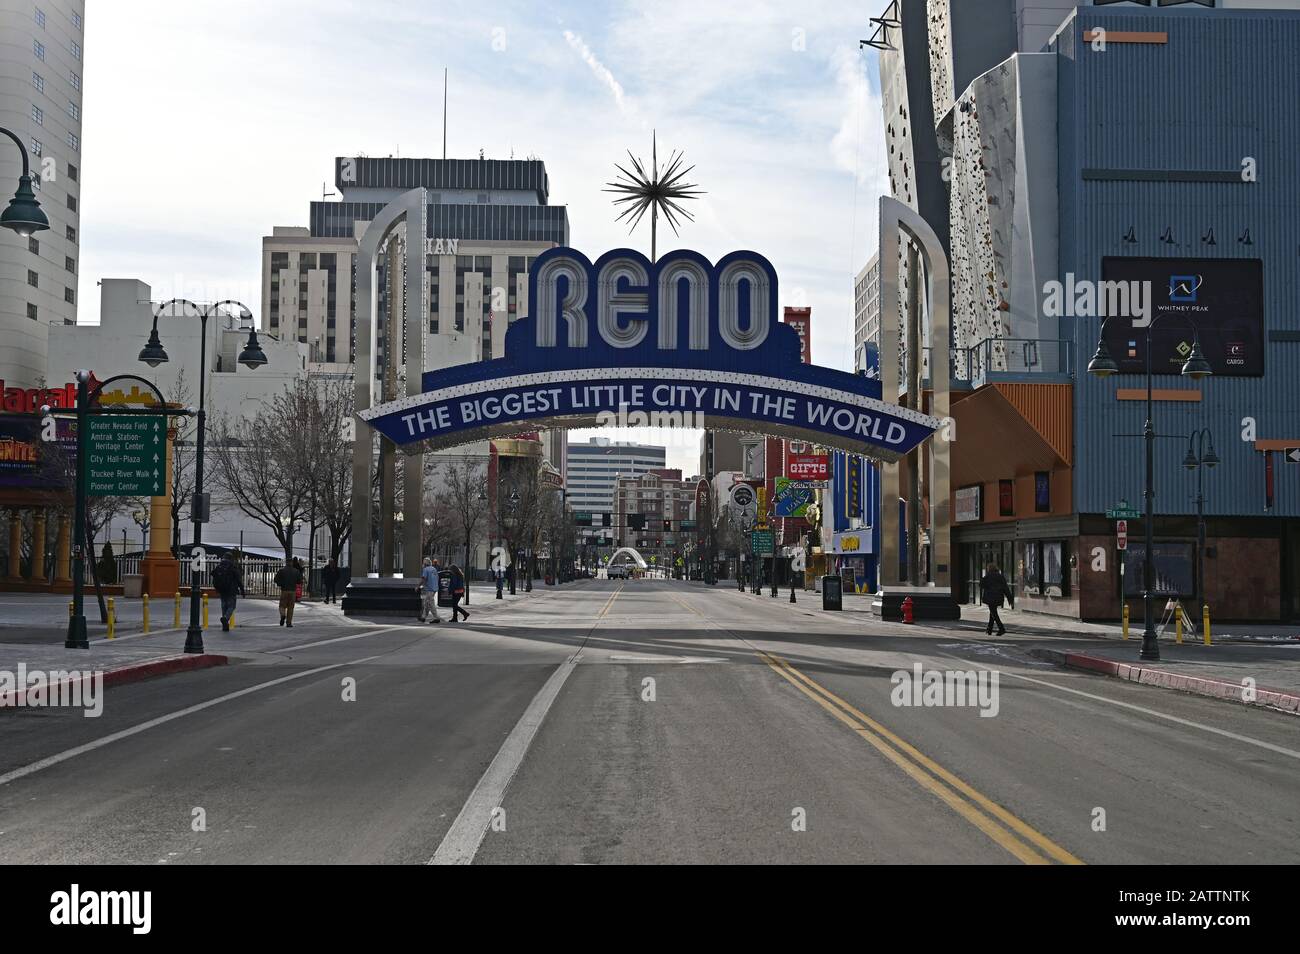 Reno, Nevada - 18. Januar 2020: Die größte Kleine Stadt der Welt wird am frühen Morgen unterzeichnet. Stockfoto